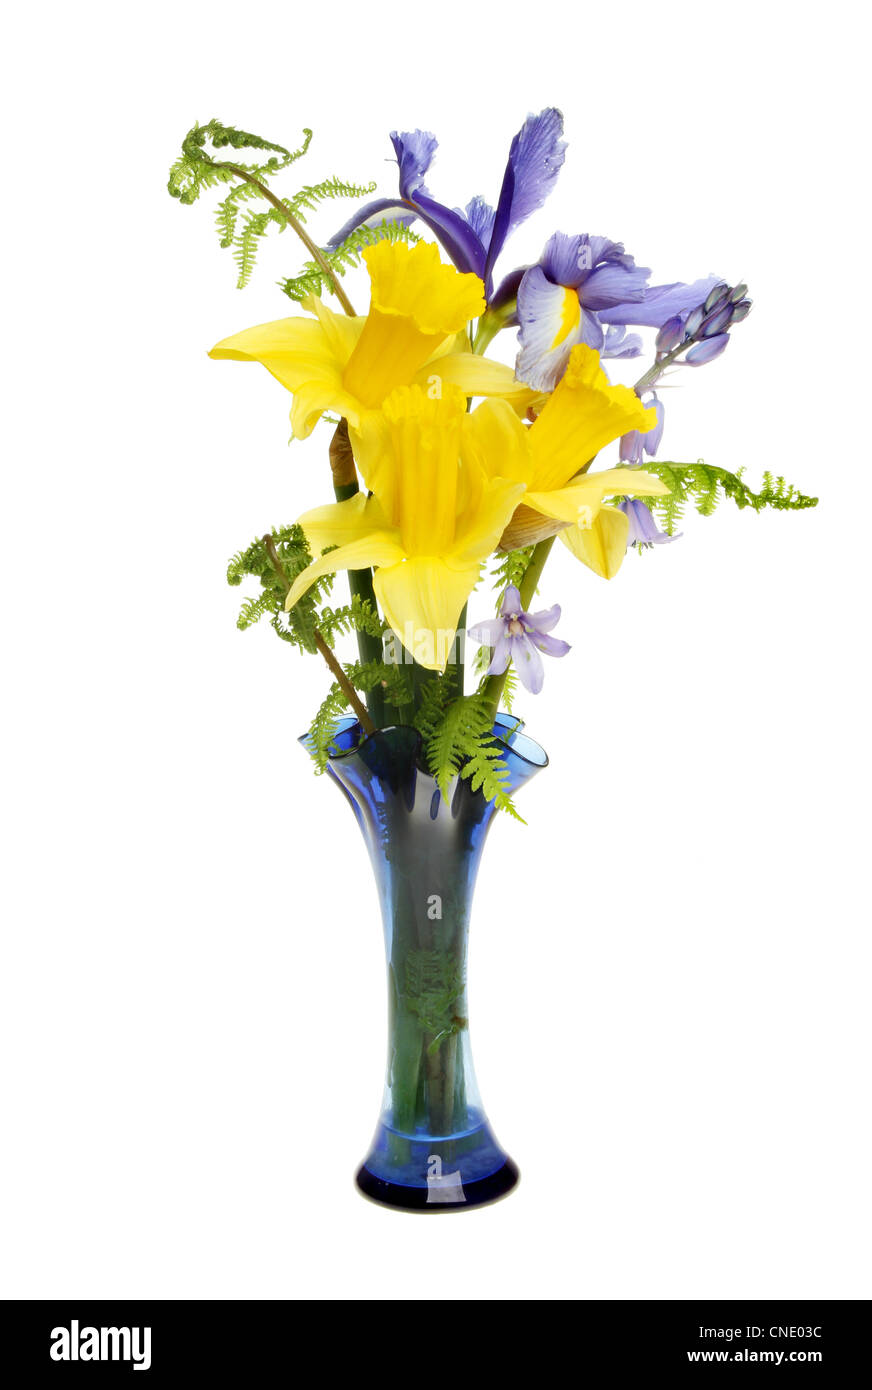 Anordnung der Narzisse, Iris und Bluebell Blumen mit Farn Wedel in einer Glasvase isoliert gegen weiß Stockfoto